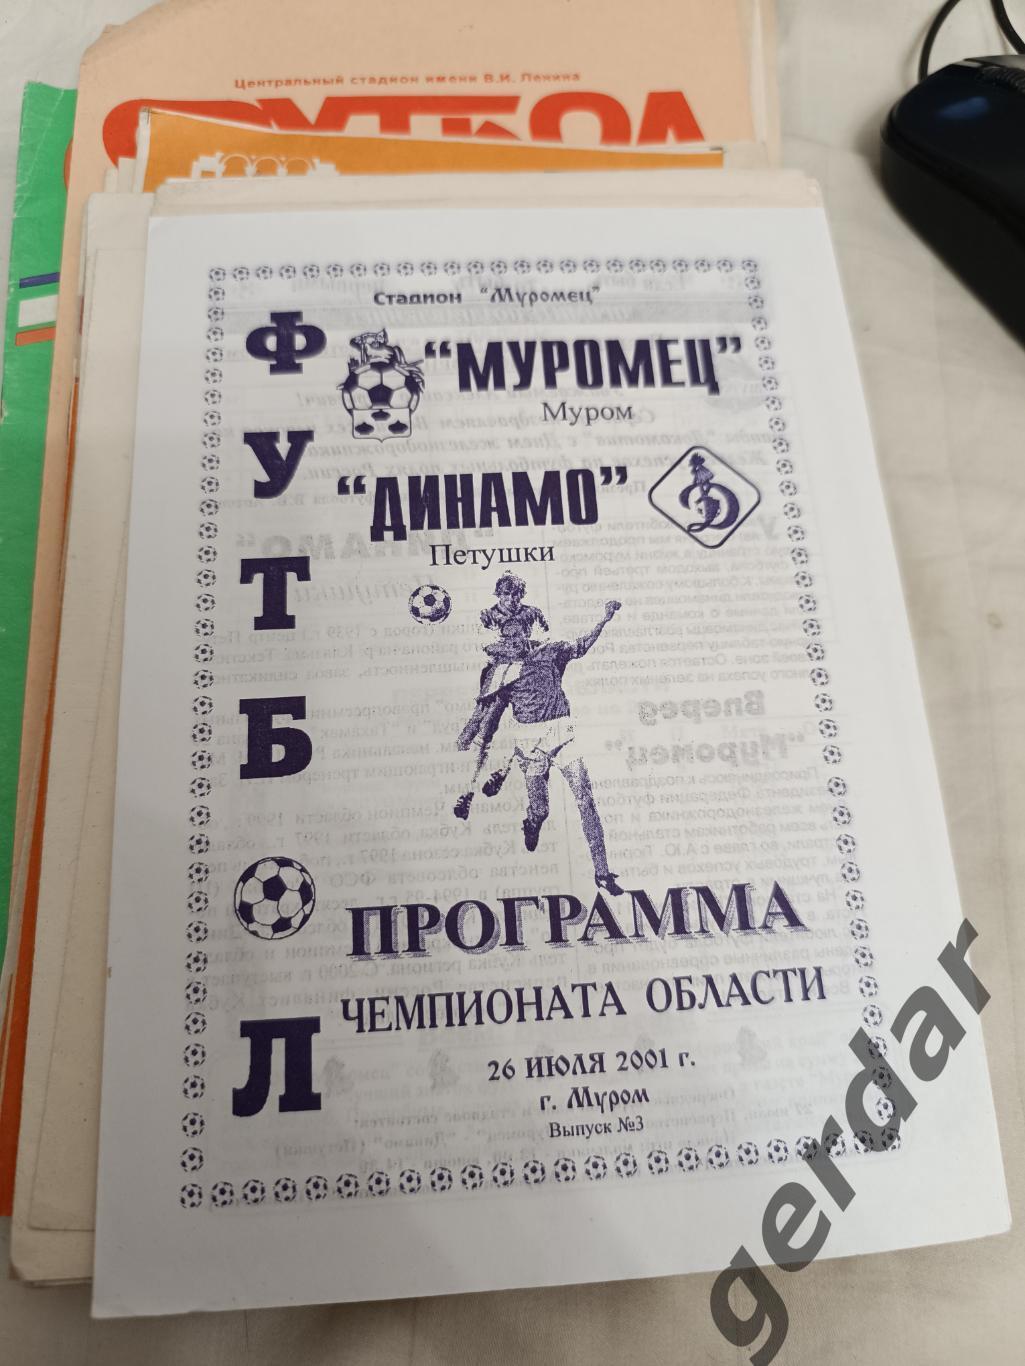 46 Муромец Муром Динамо петушки 2001 лфк